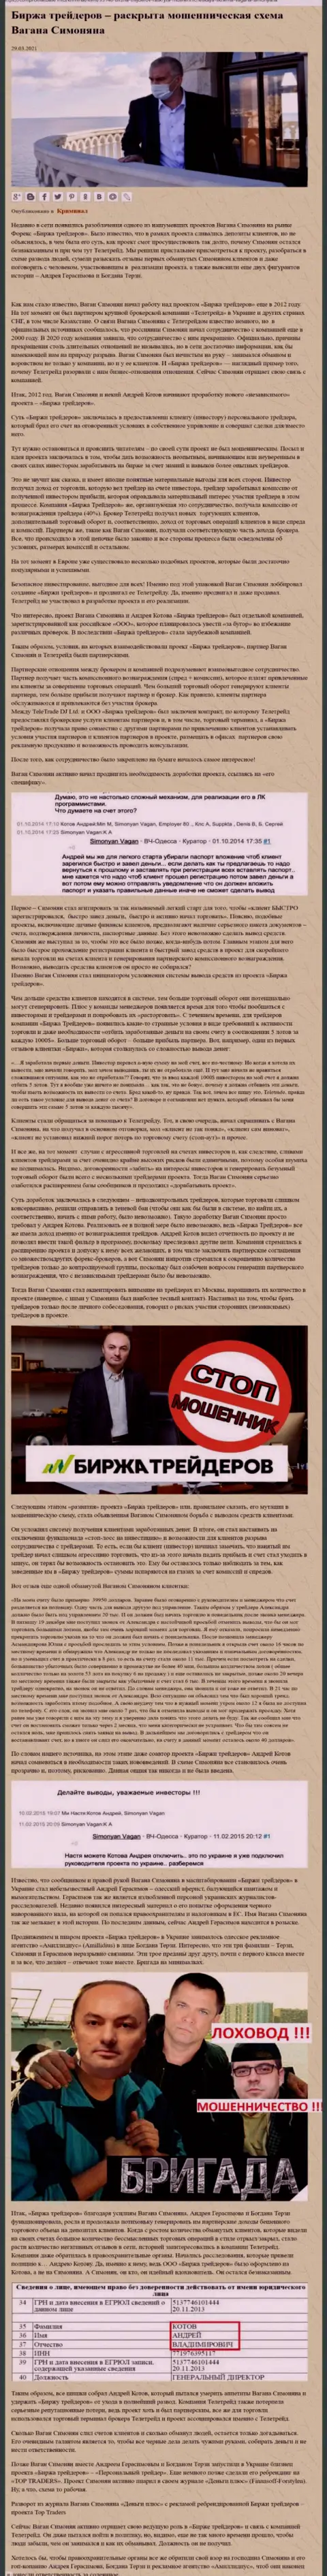 Рекламой фирмы Б Трейдерс, тесно связанной с мошенниками ТелеТрейд, также занимался Богдан Михайлович Терзи